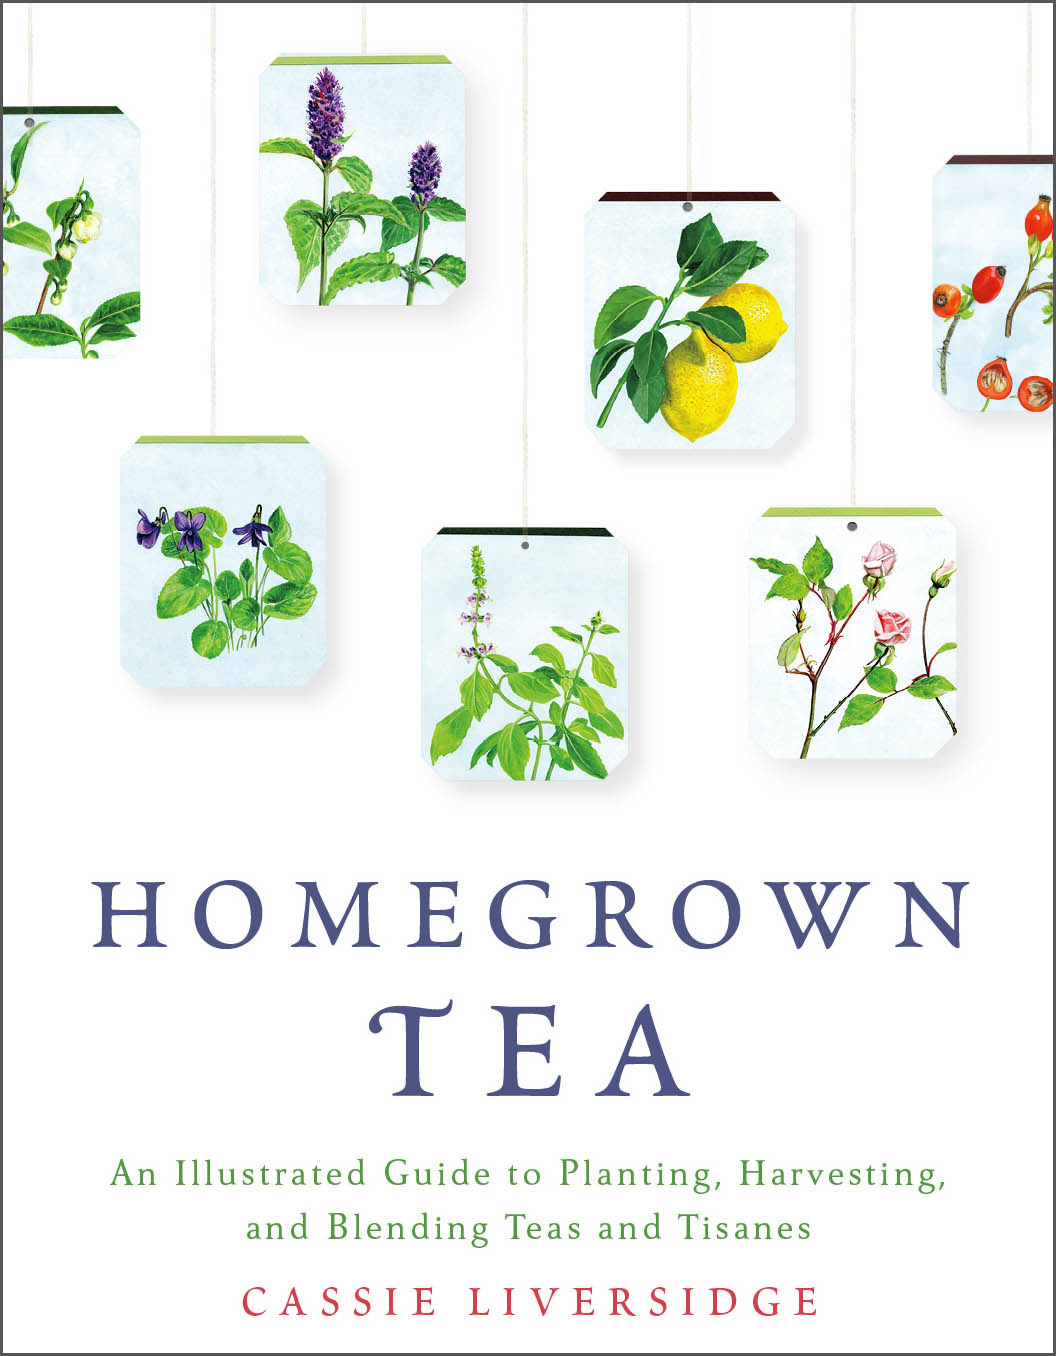 Homegrown tea edge